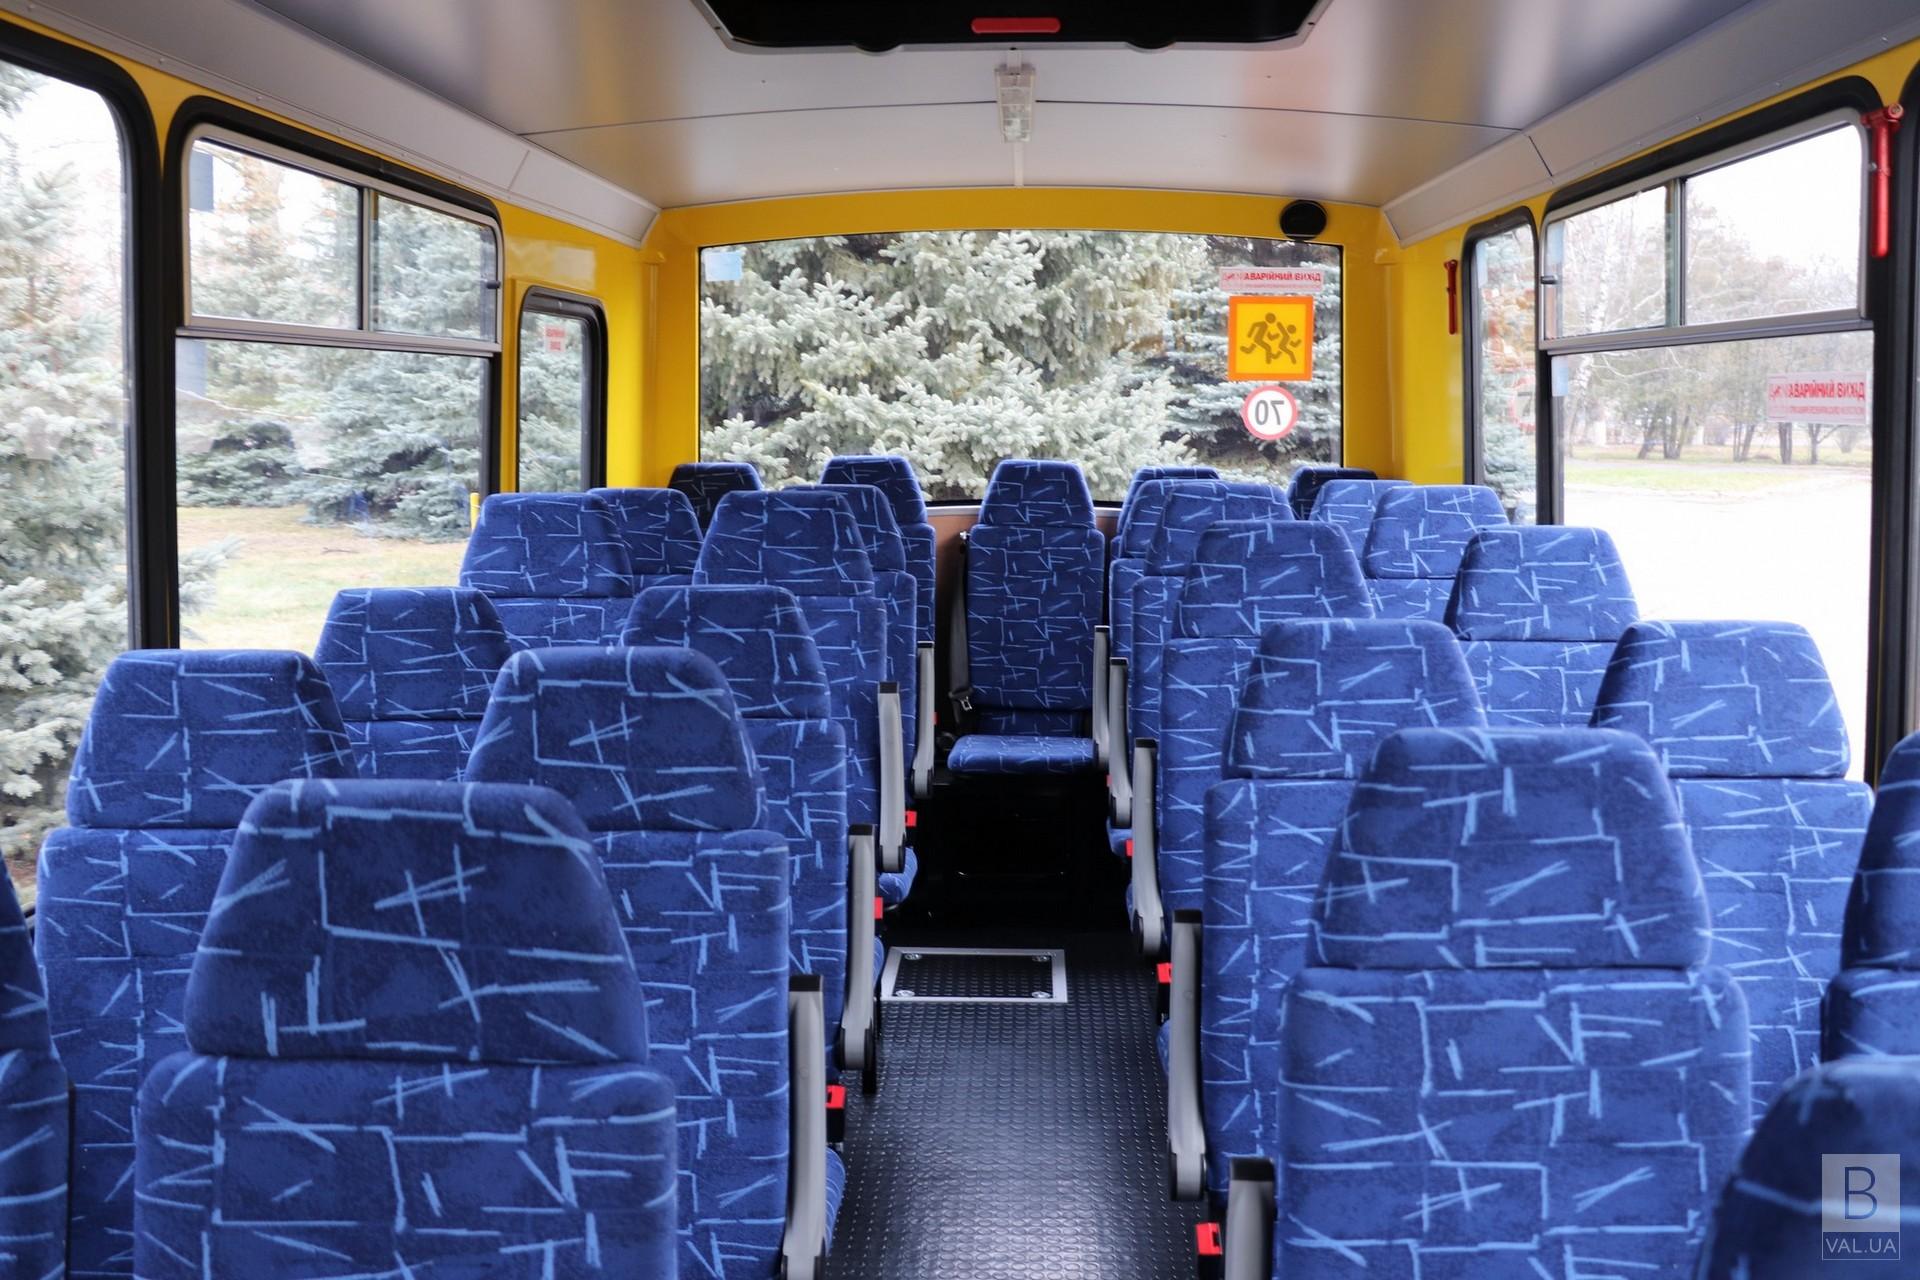 Ще одна громада на Чернігівщині отримала шкільний автобус